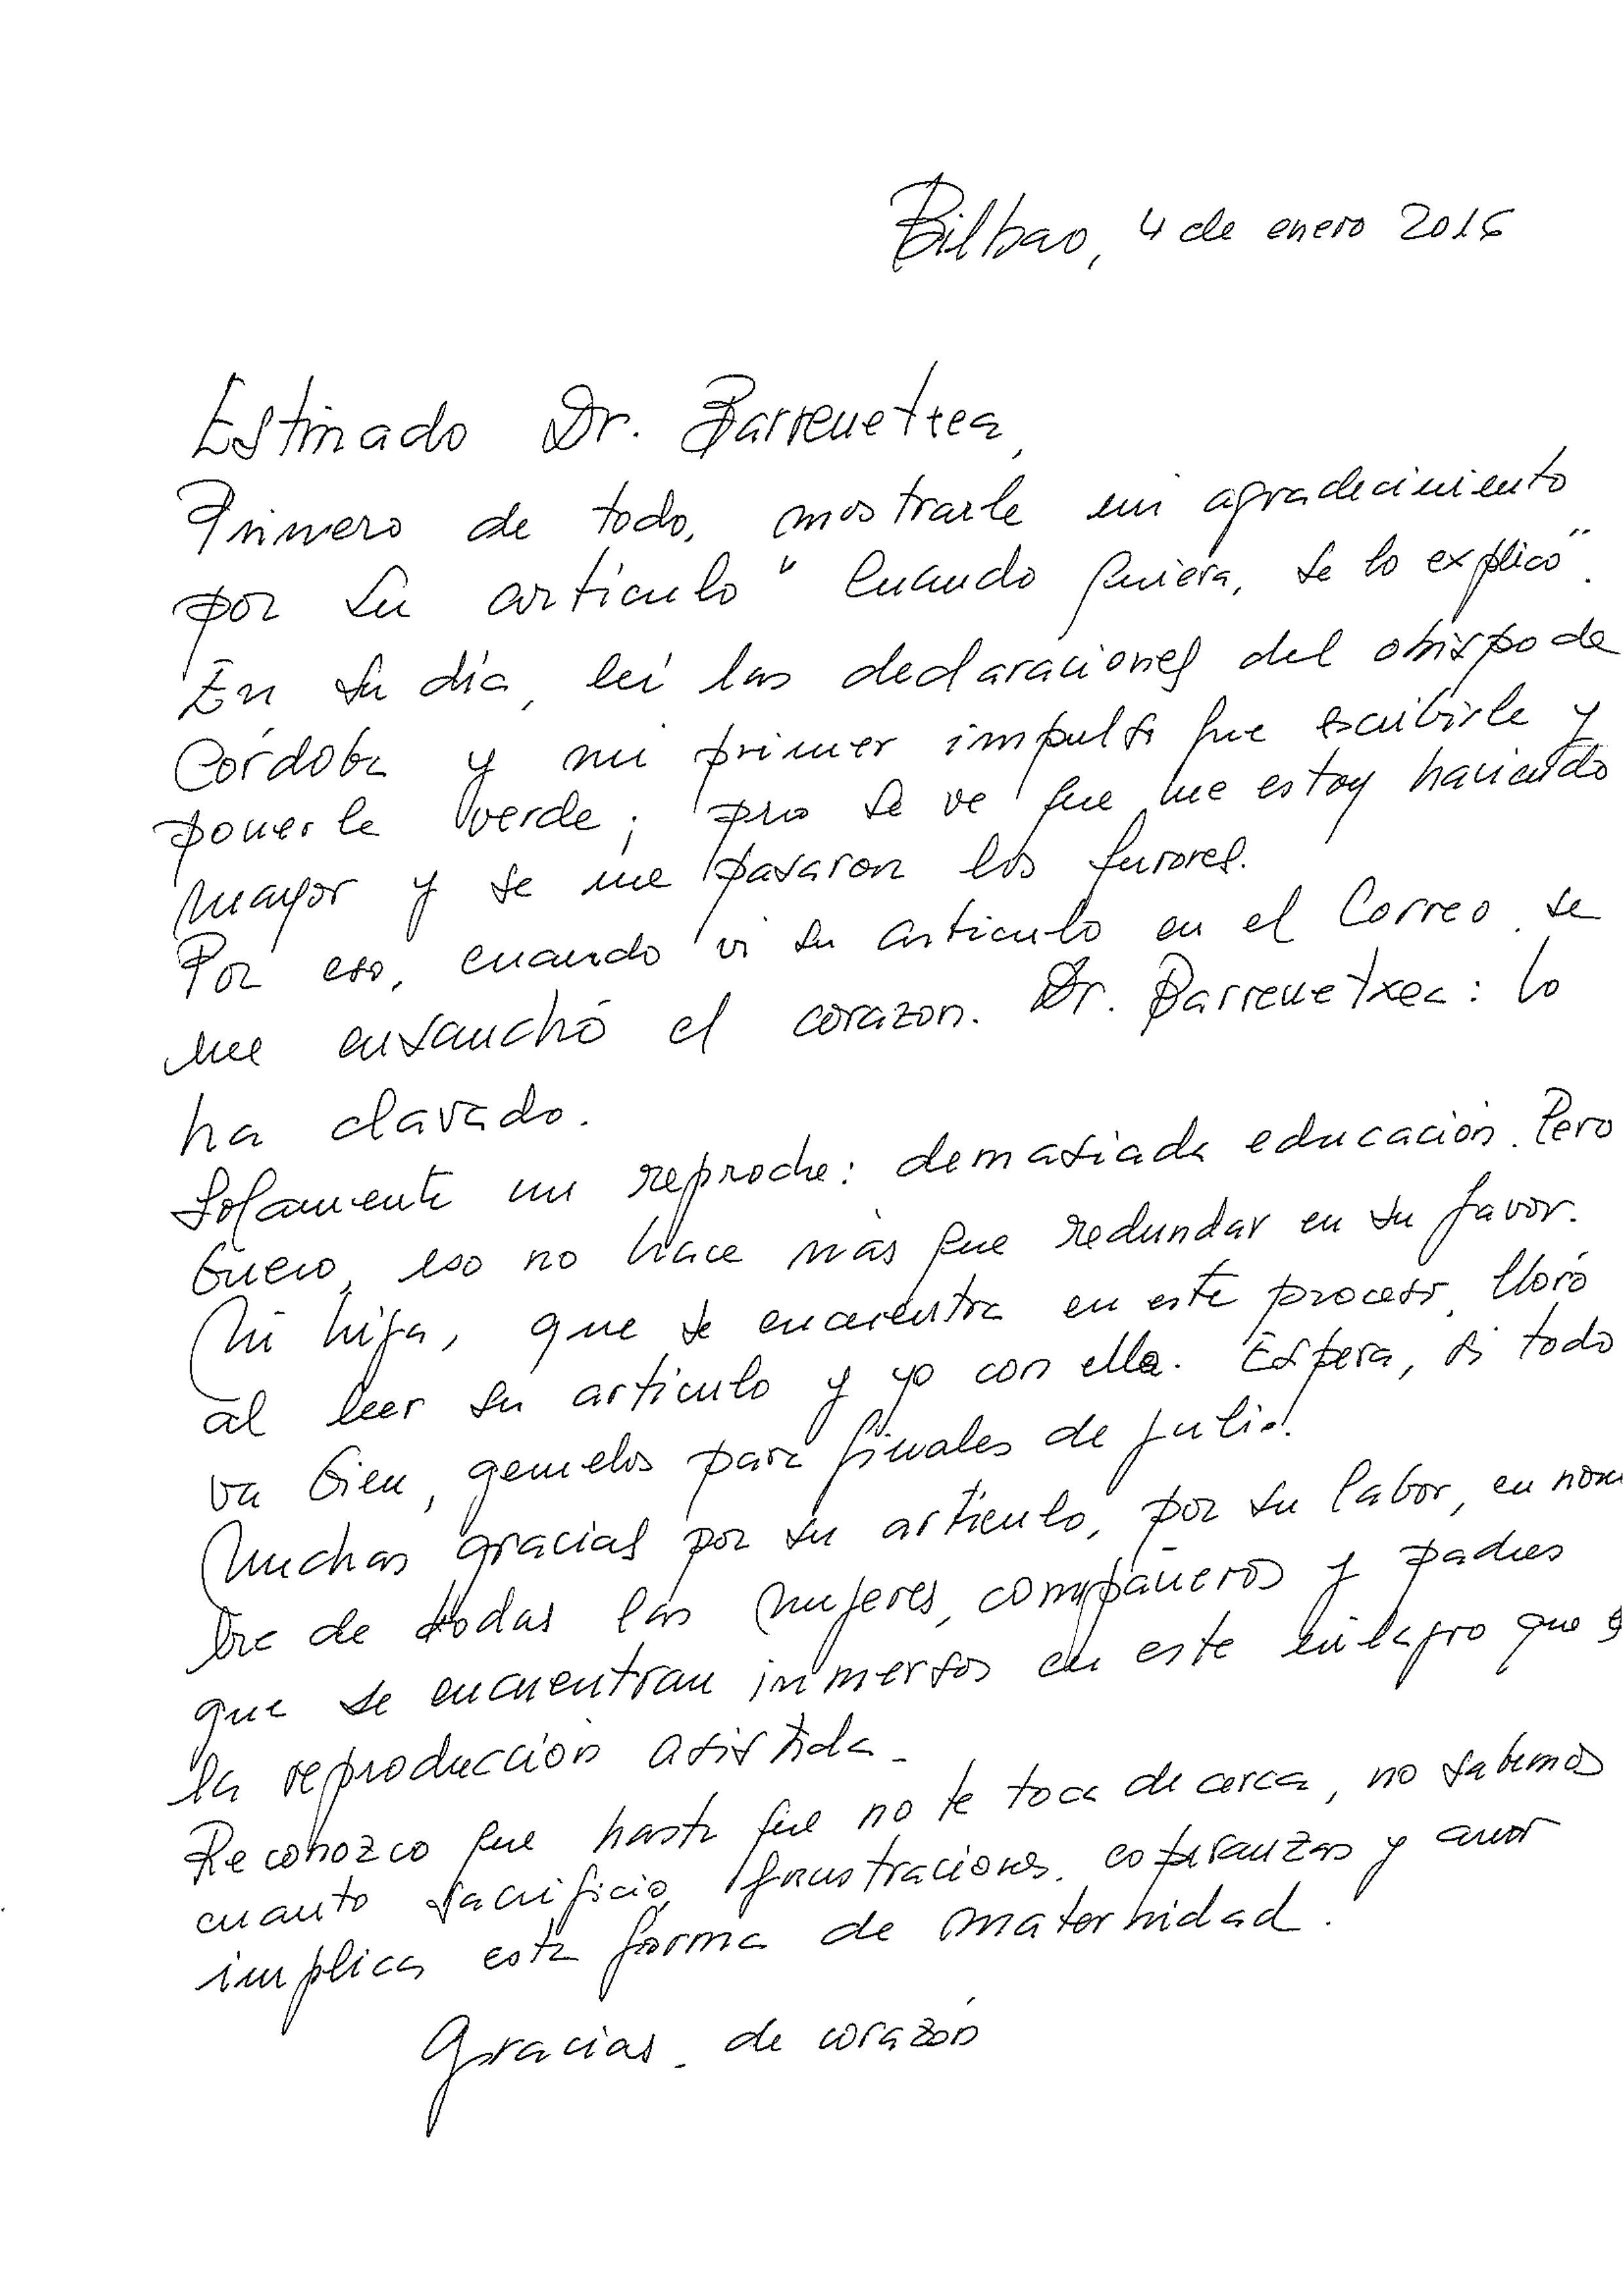 Carta de agradecimiento - Reproducción Bilbao